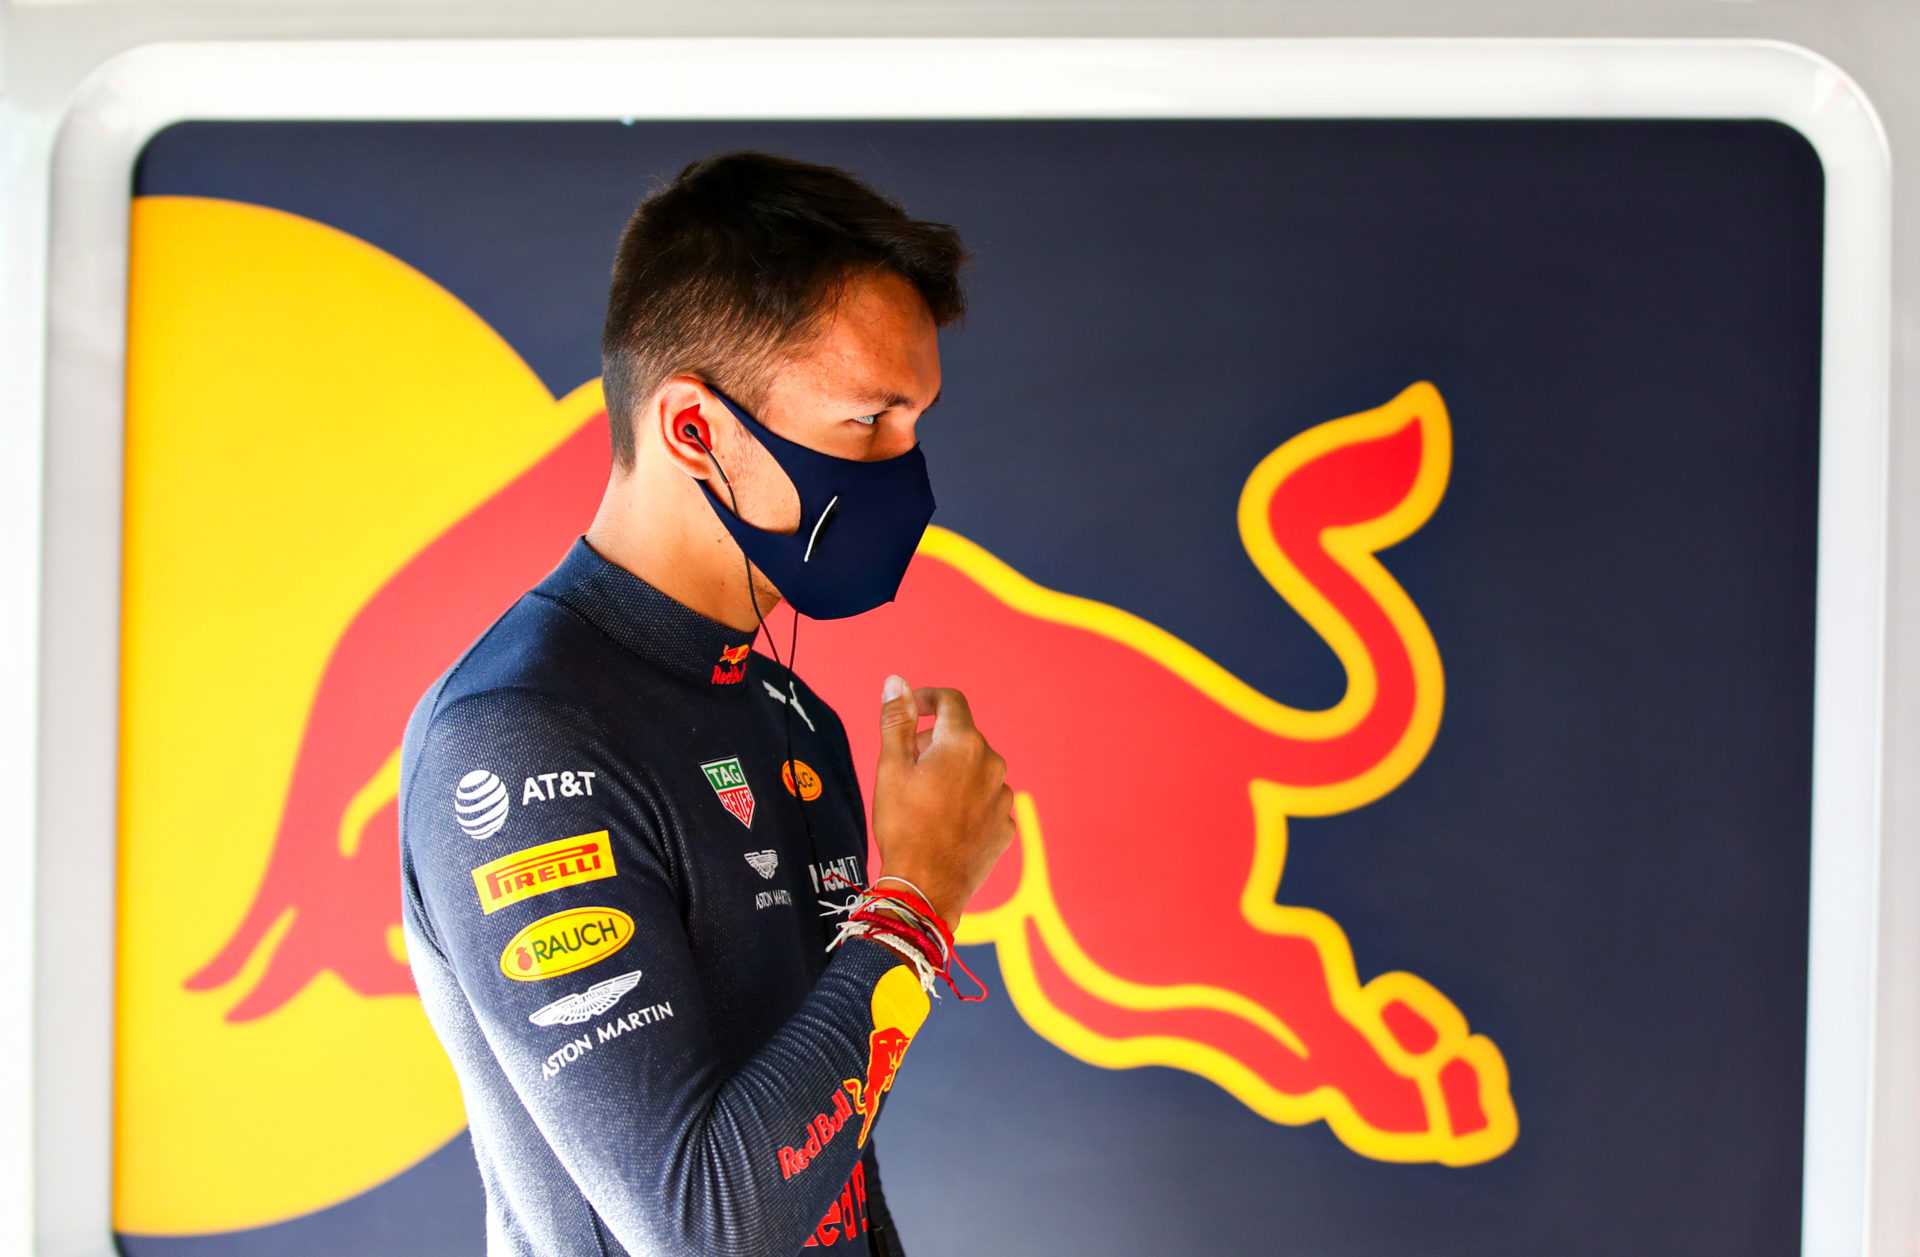 Alex Albon de Red Bull F1 sous une pression massive pour performer dans les courses restantes